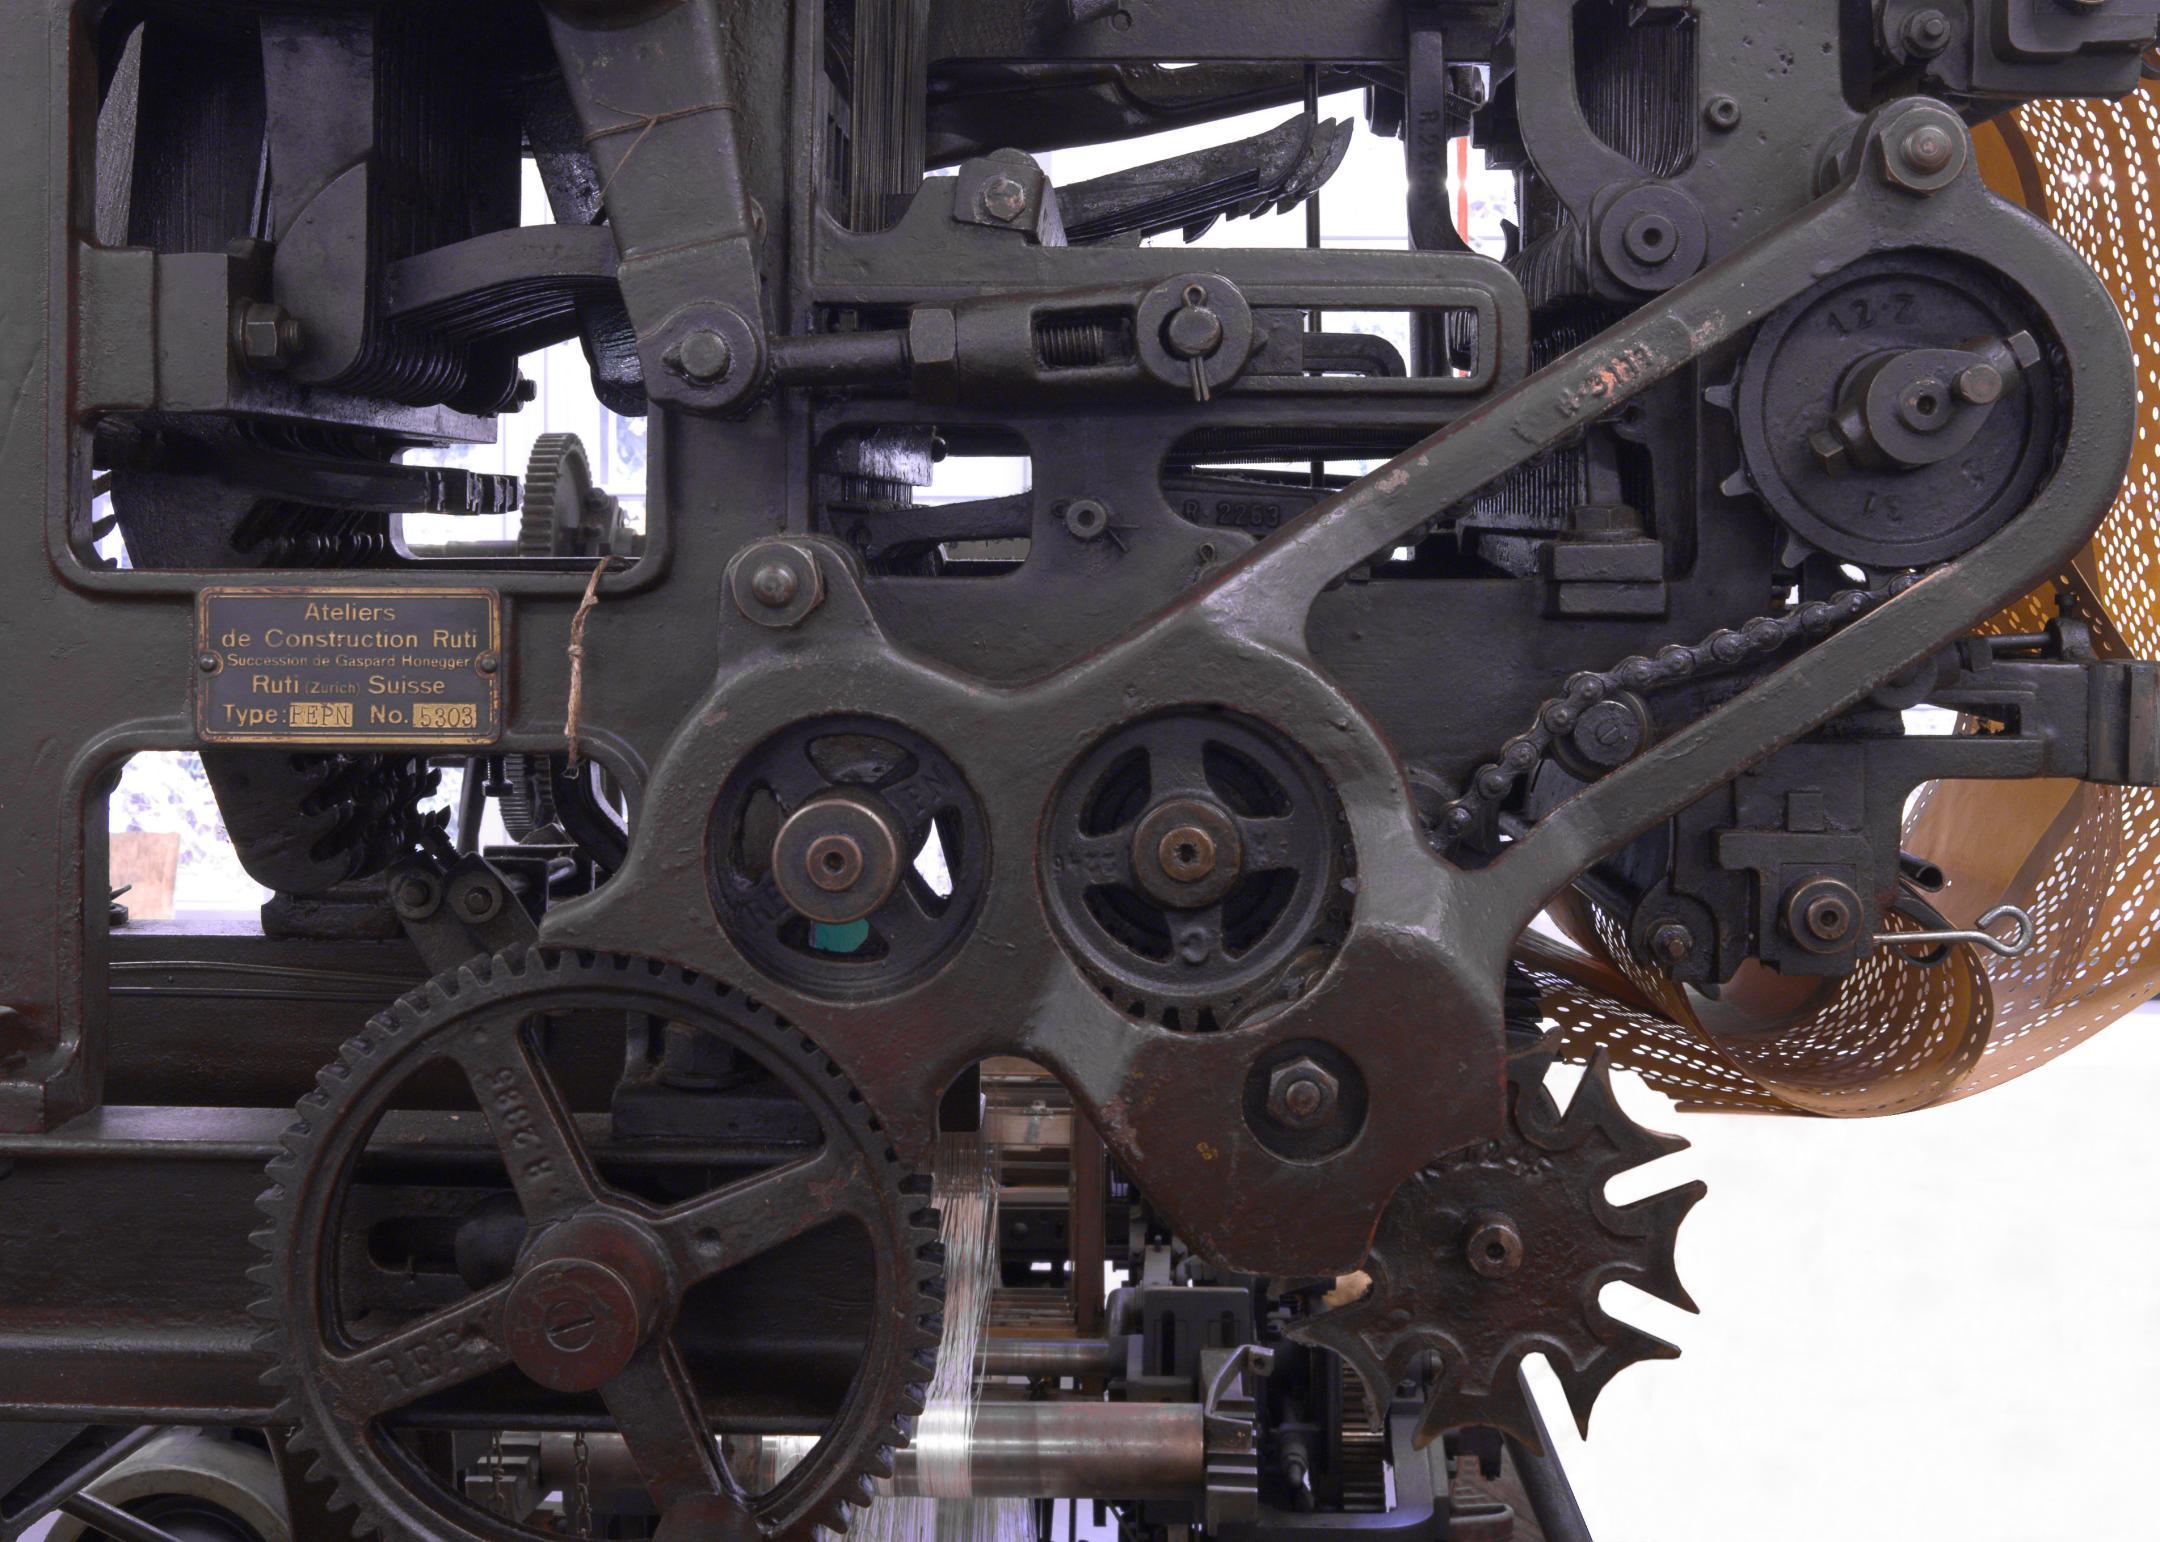 Detailansicht der Mechanik einer alten Maschine.